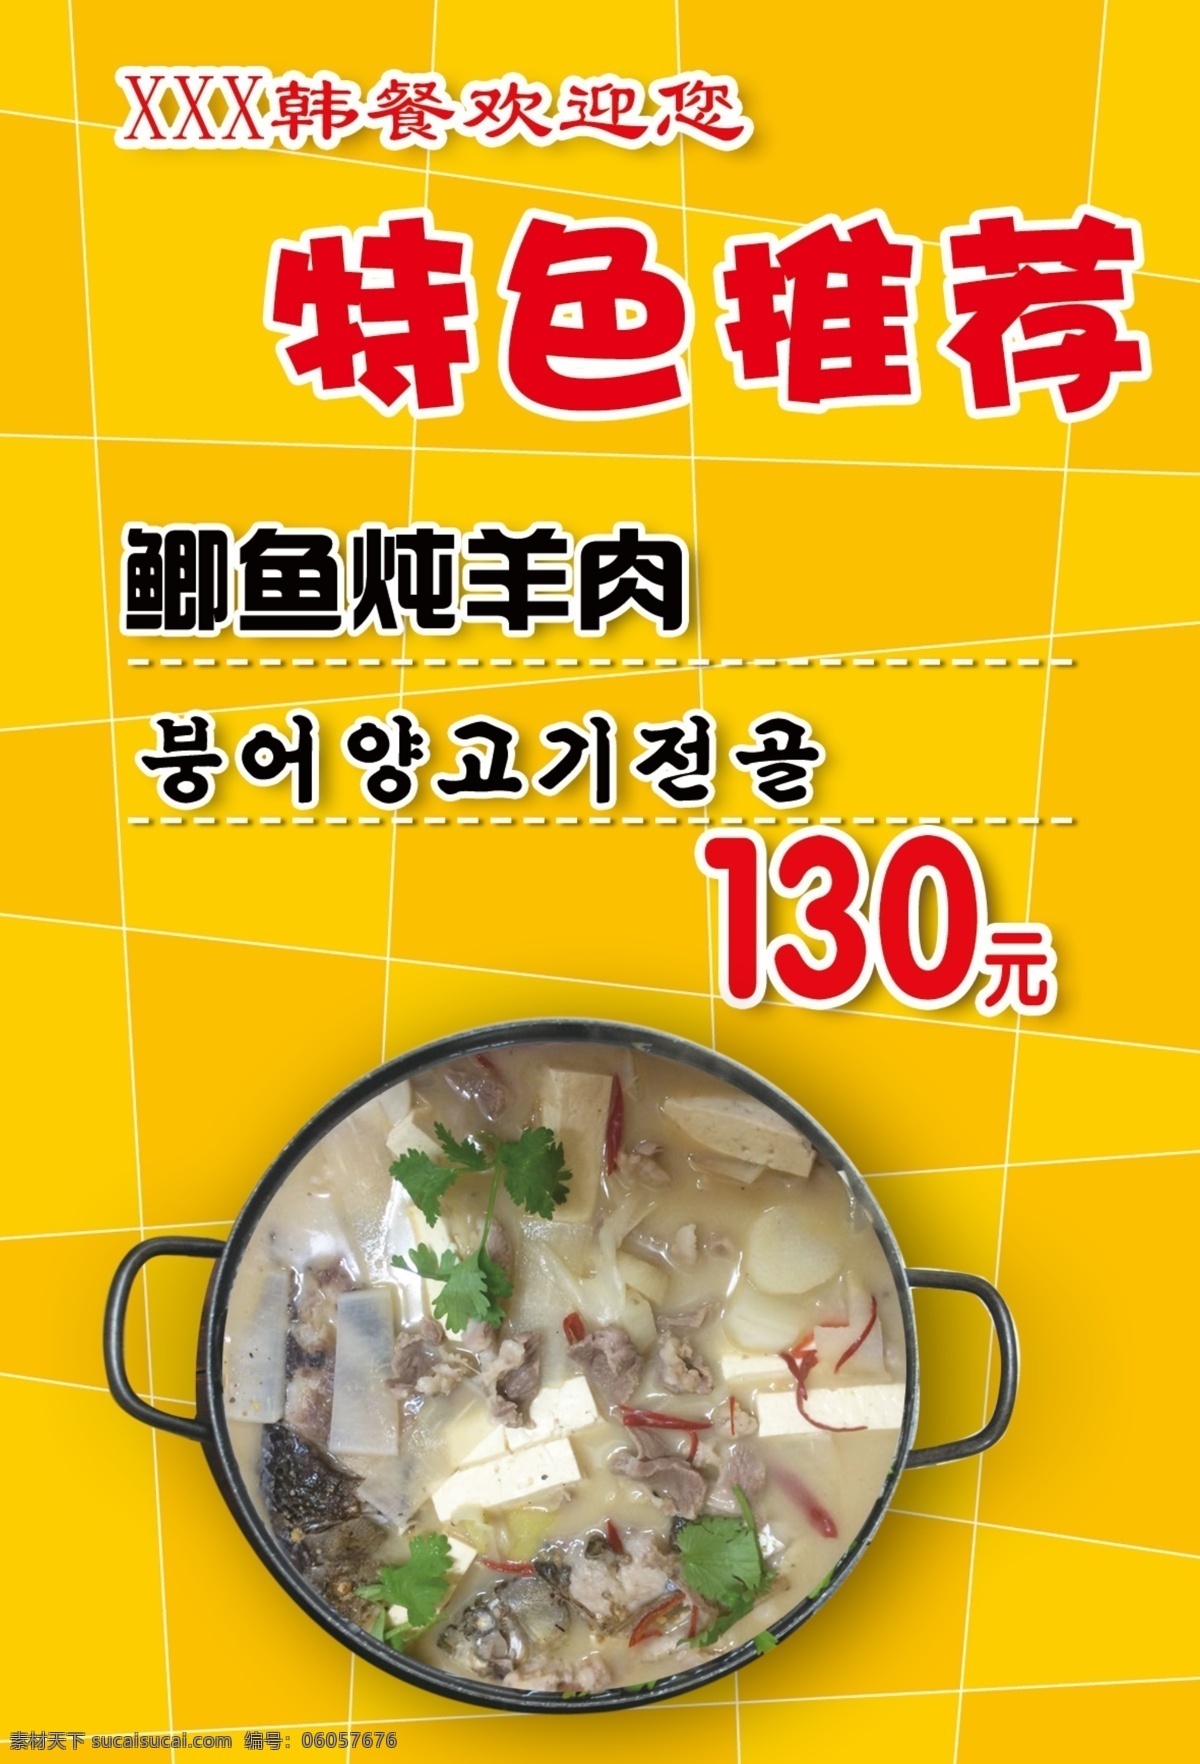 韩餐 特色推荐 鲫鱼炖羊肉 韩式火锅 黄色几何背景 菜单菜谱